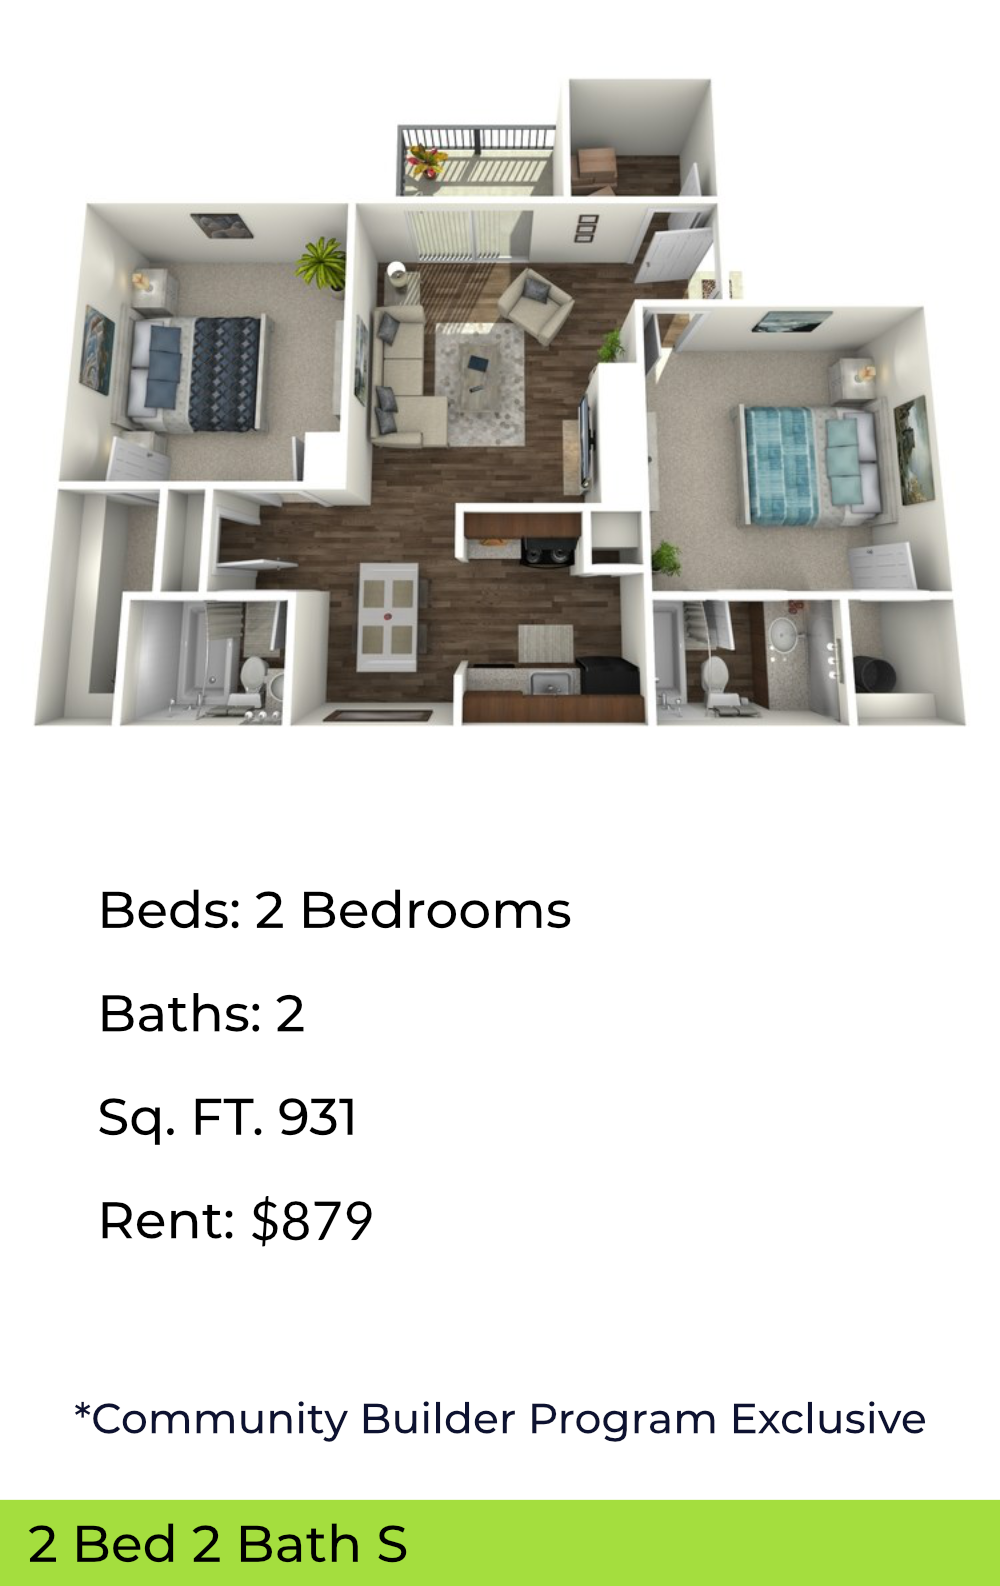 floor plan of 2 bedroom unit